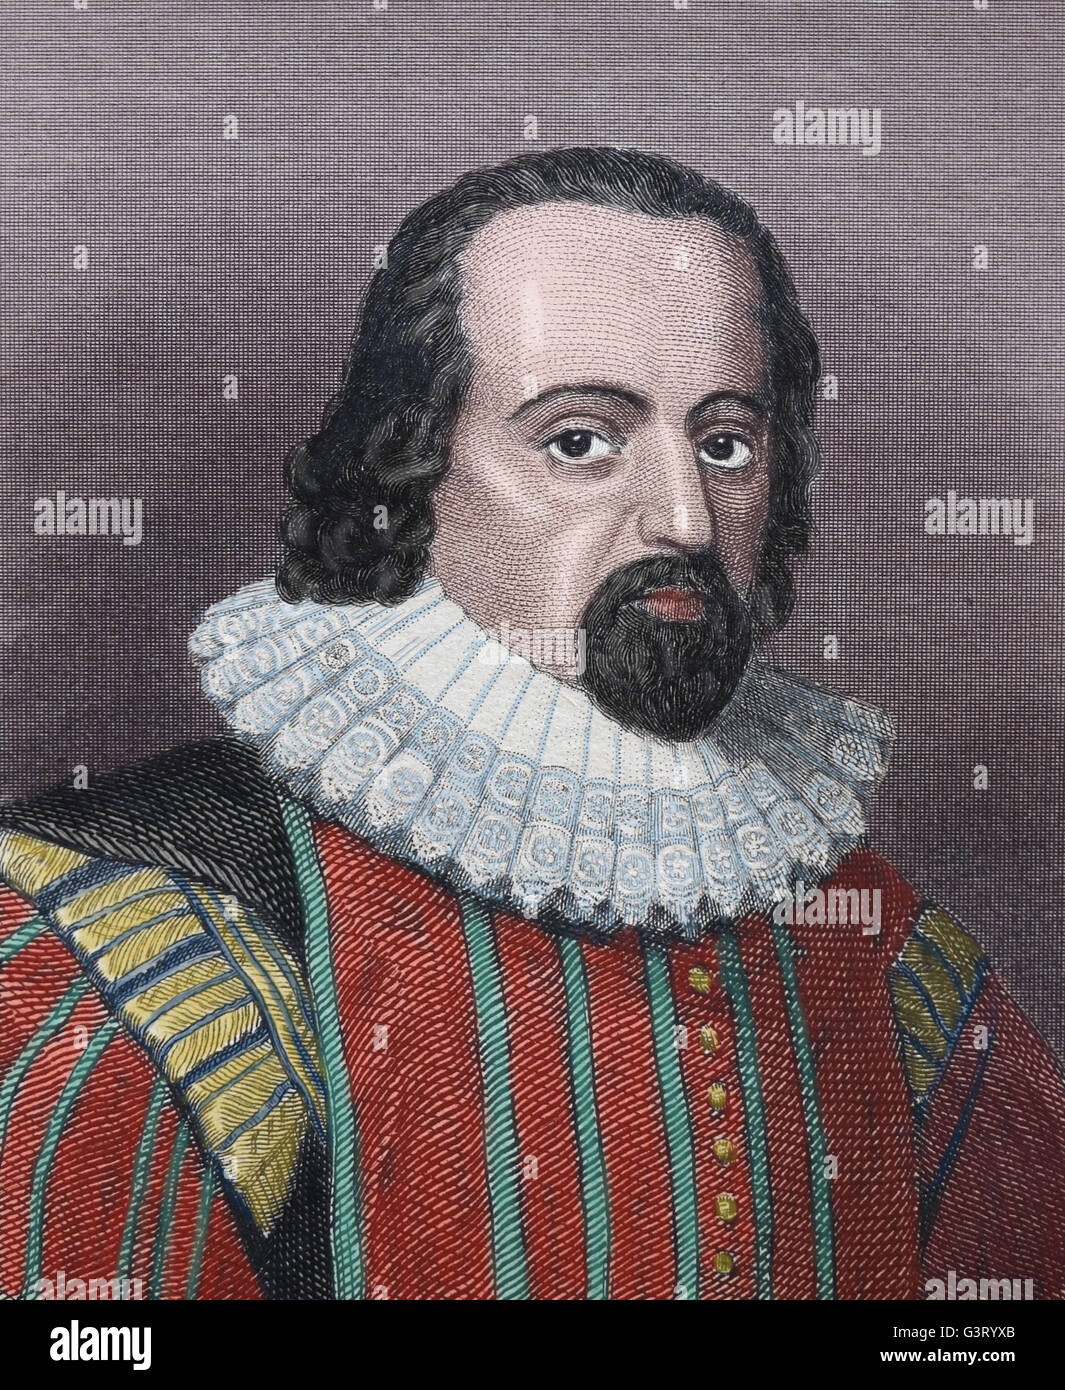 Francis Bacon, 1. Viscount St. Alban (1561-1626). Englischer Philosoph, Staatsmann und wissenschaftliche. Kupferstich, 19. Jahrhundert. Stockfoto